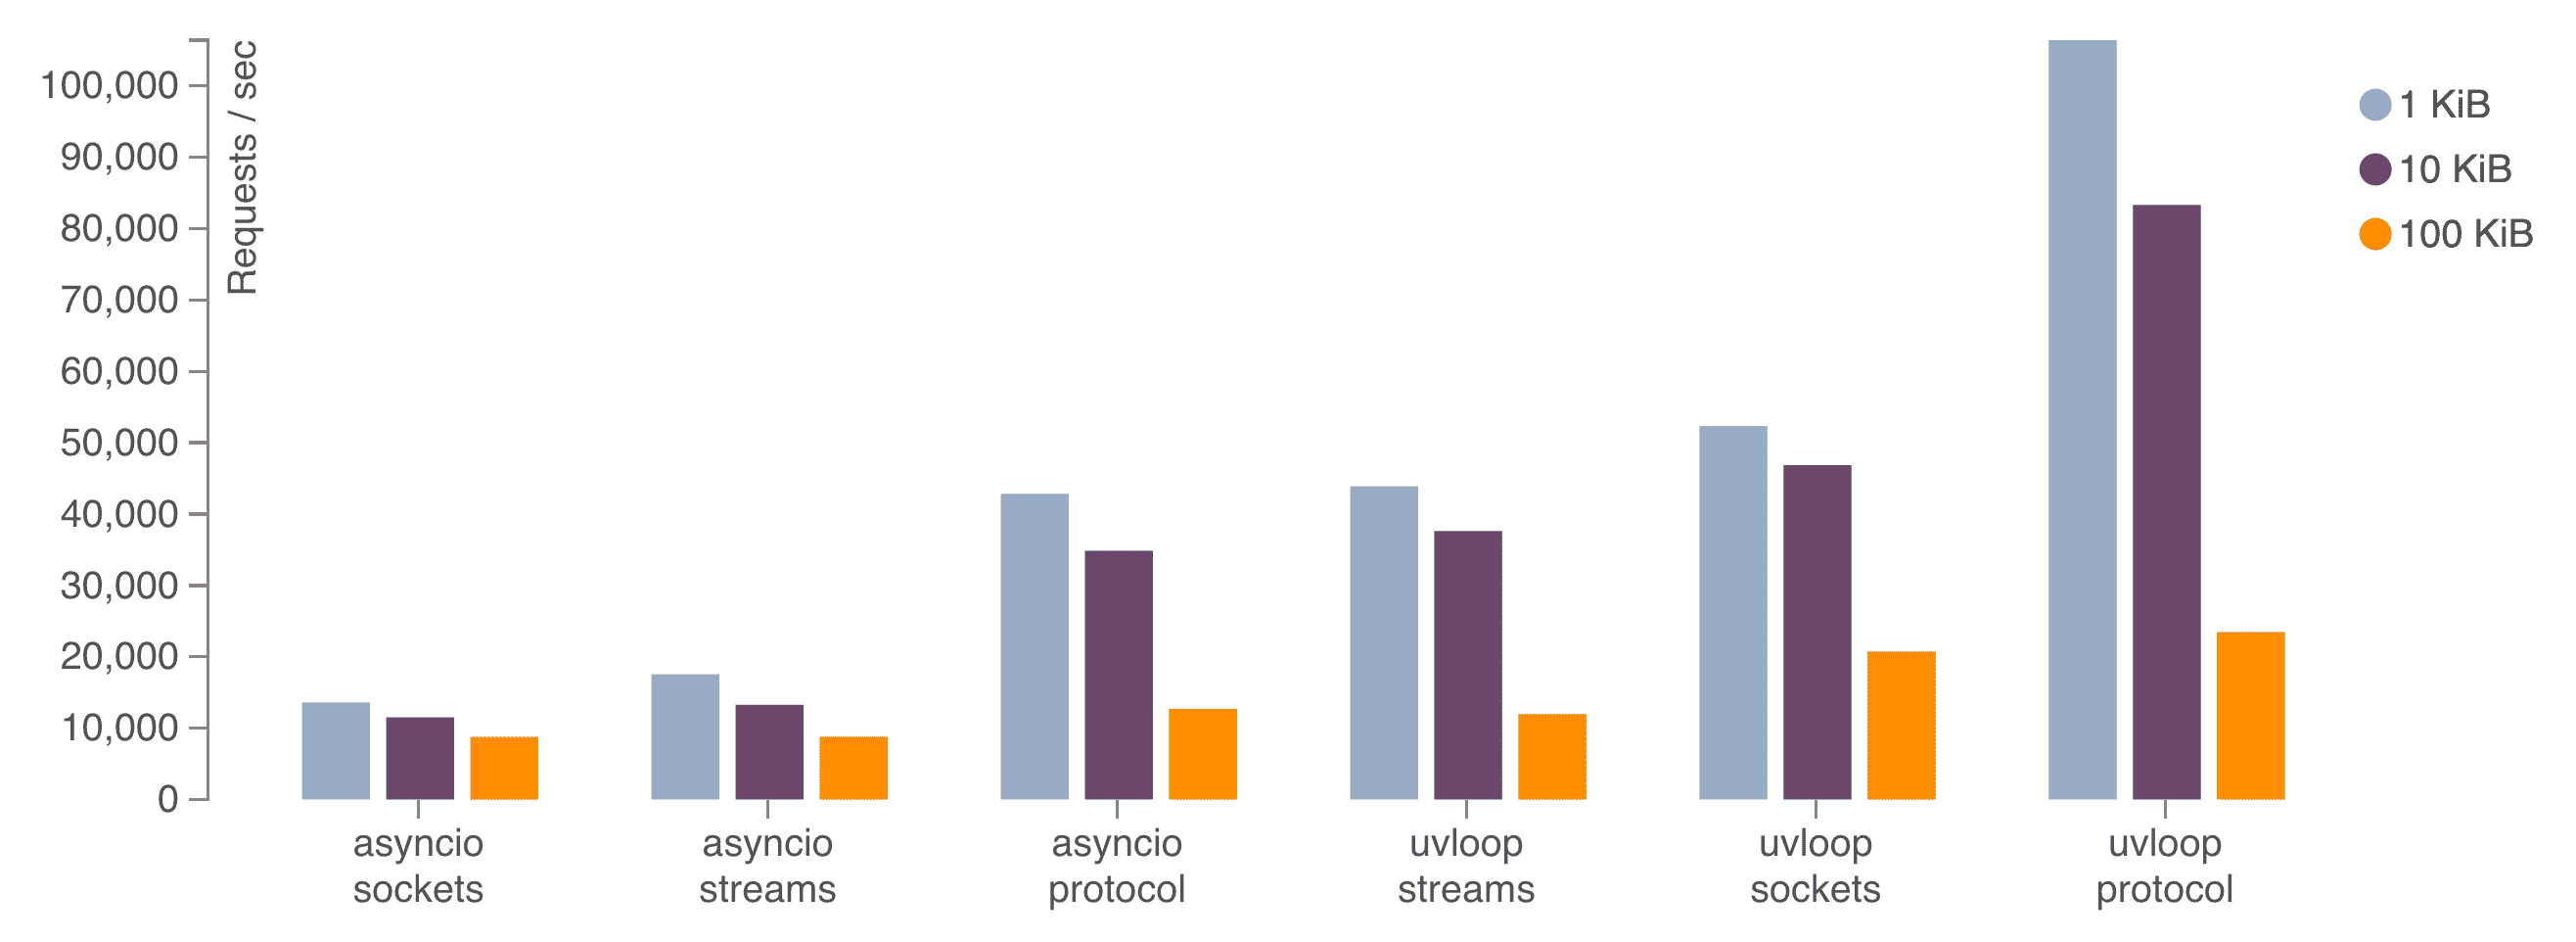 uvloop makes asyncio 2-4x faster